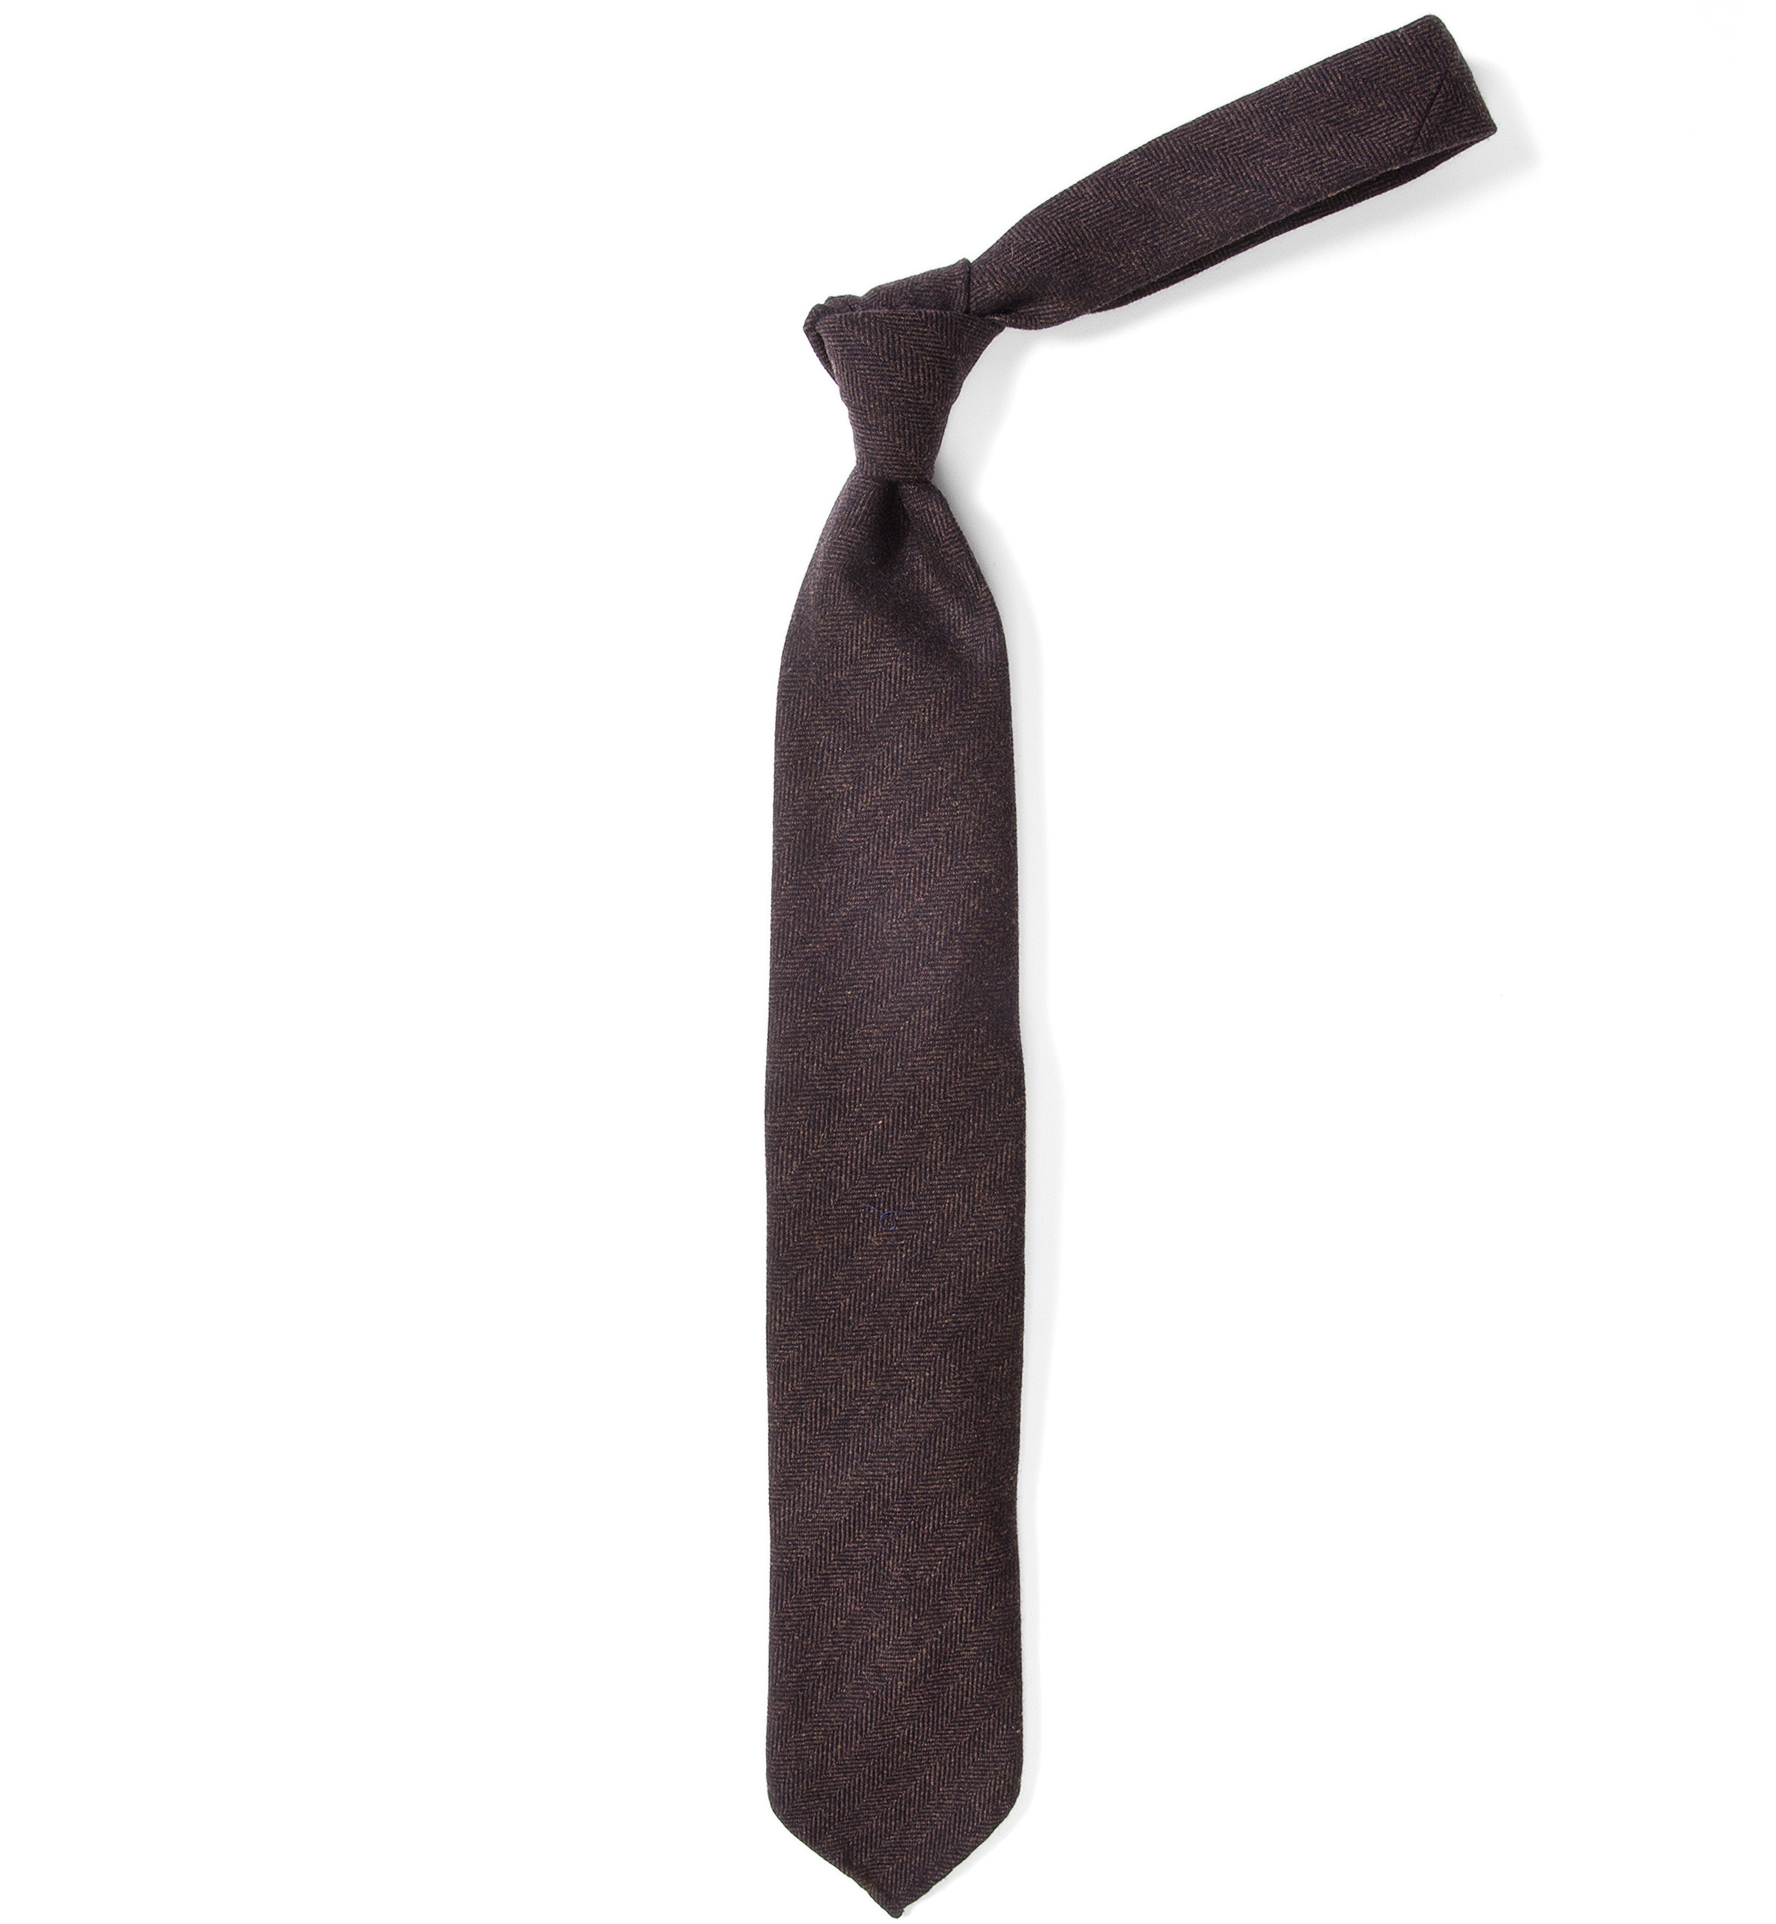 Bergamo Brown Herringbone Wool Tie by Proper Cloth